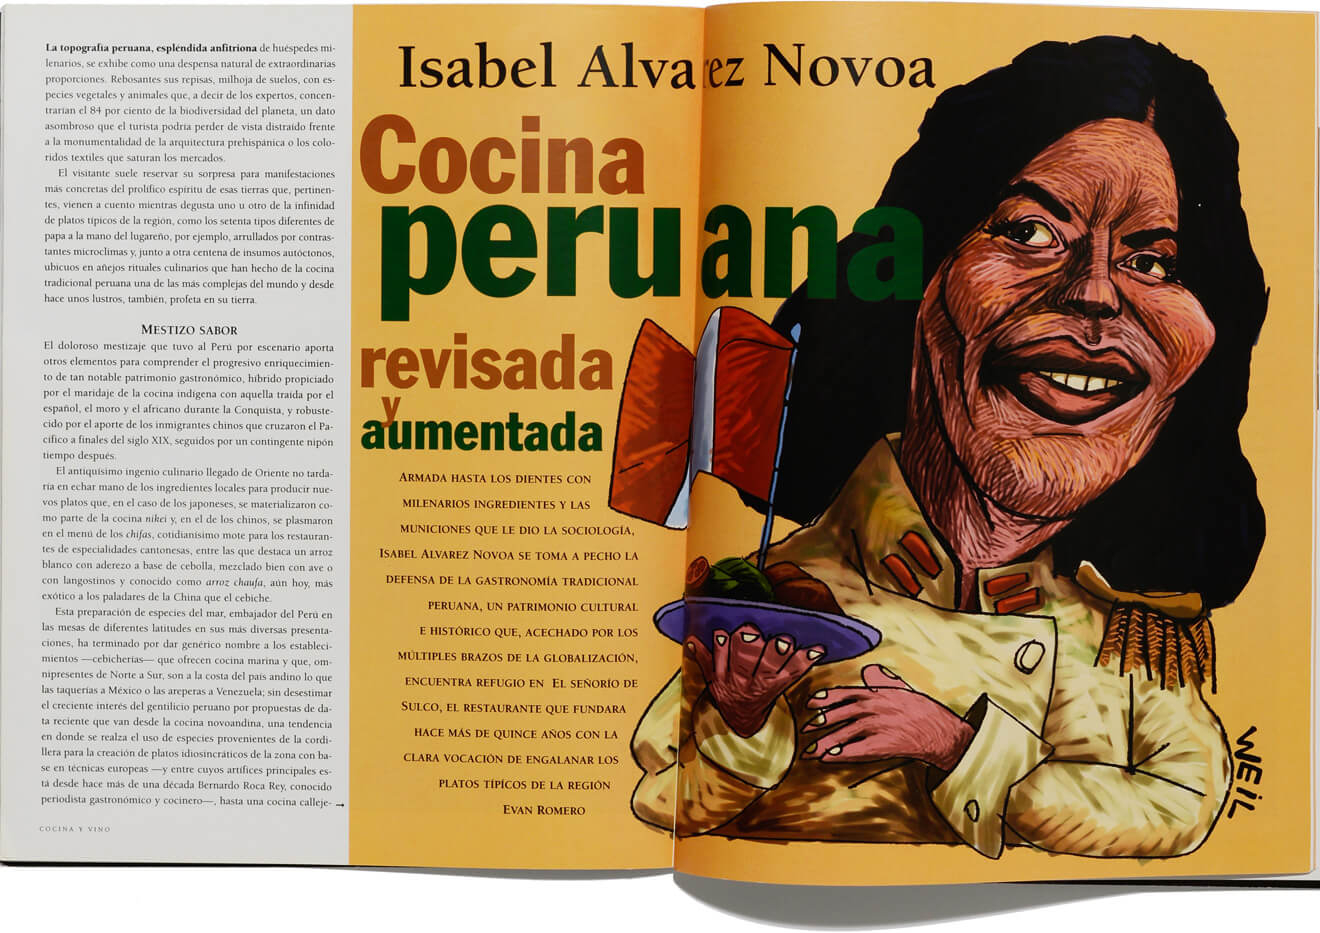 Isabel Álvarez Novoa en “Cocina y vino”